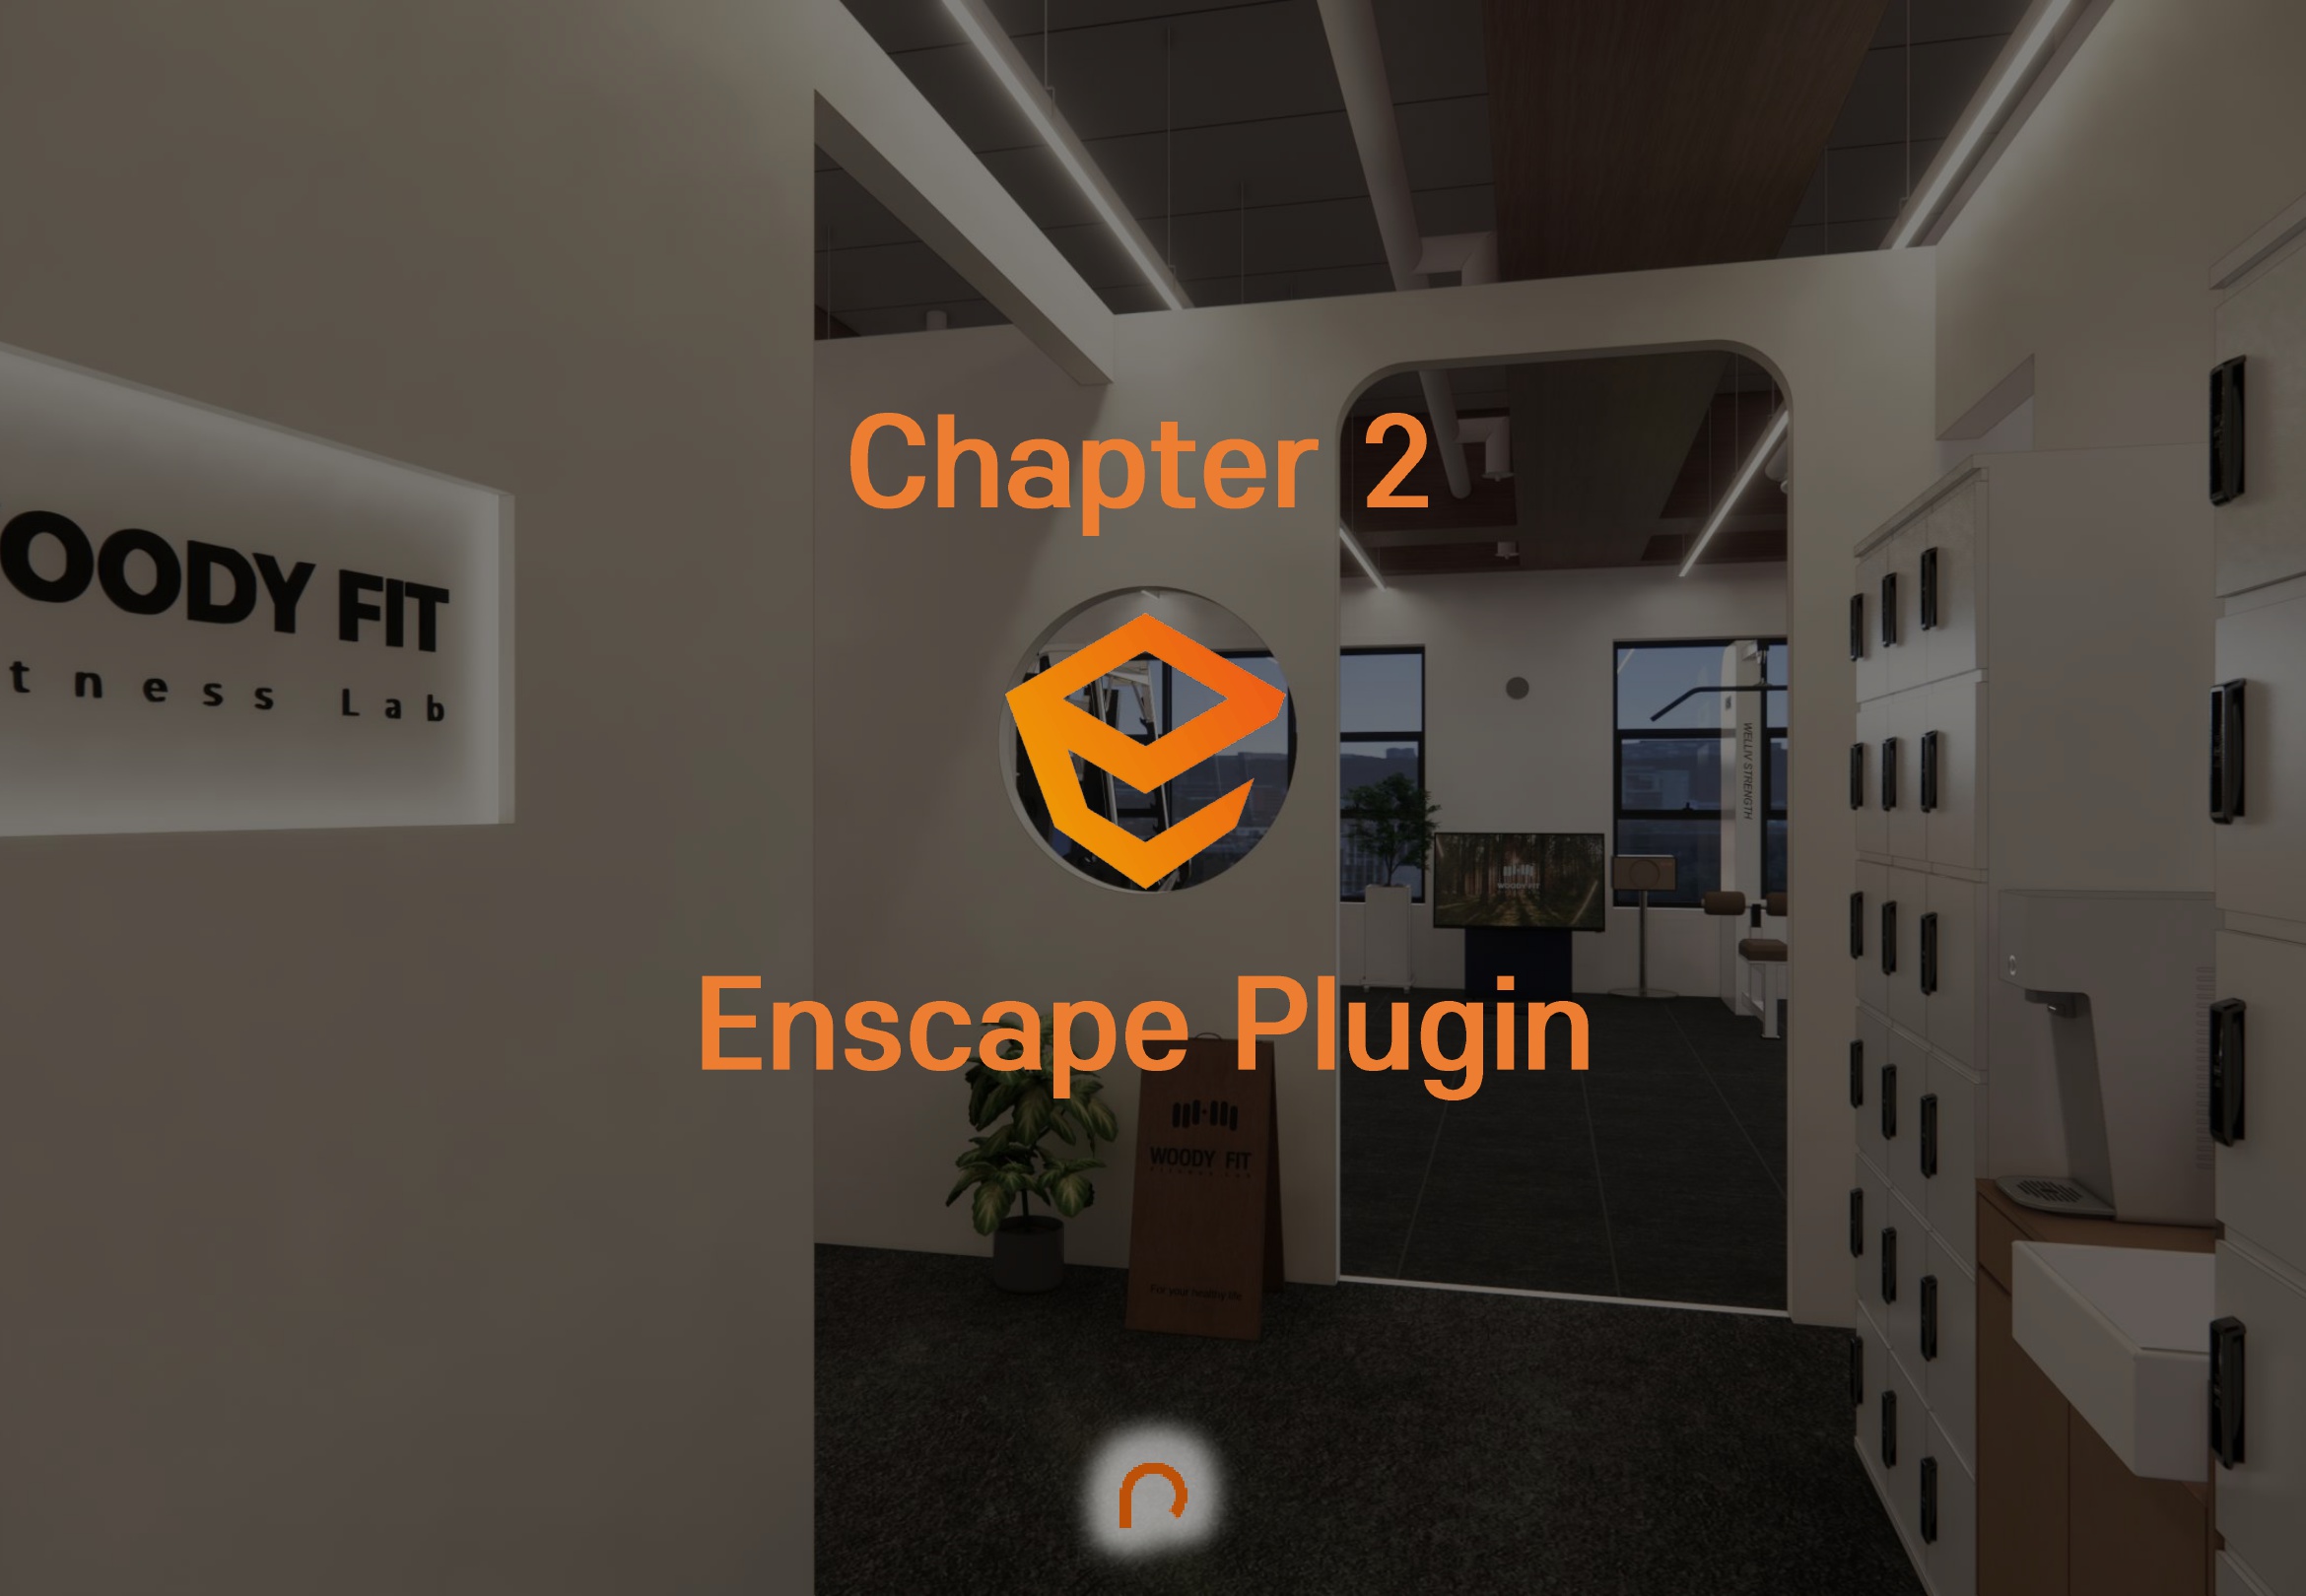 Chapter 2. Enscape Plugin